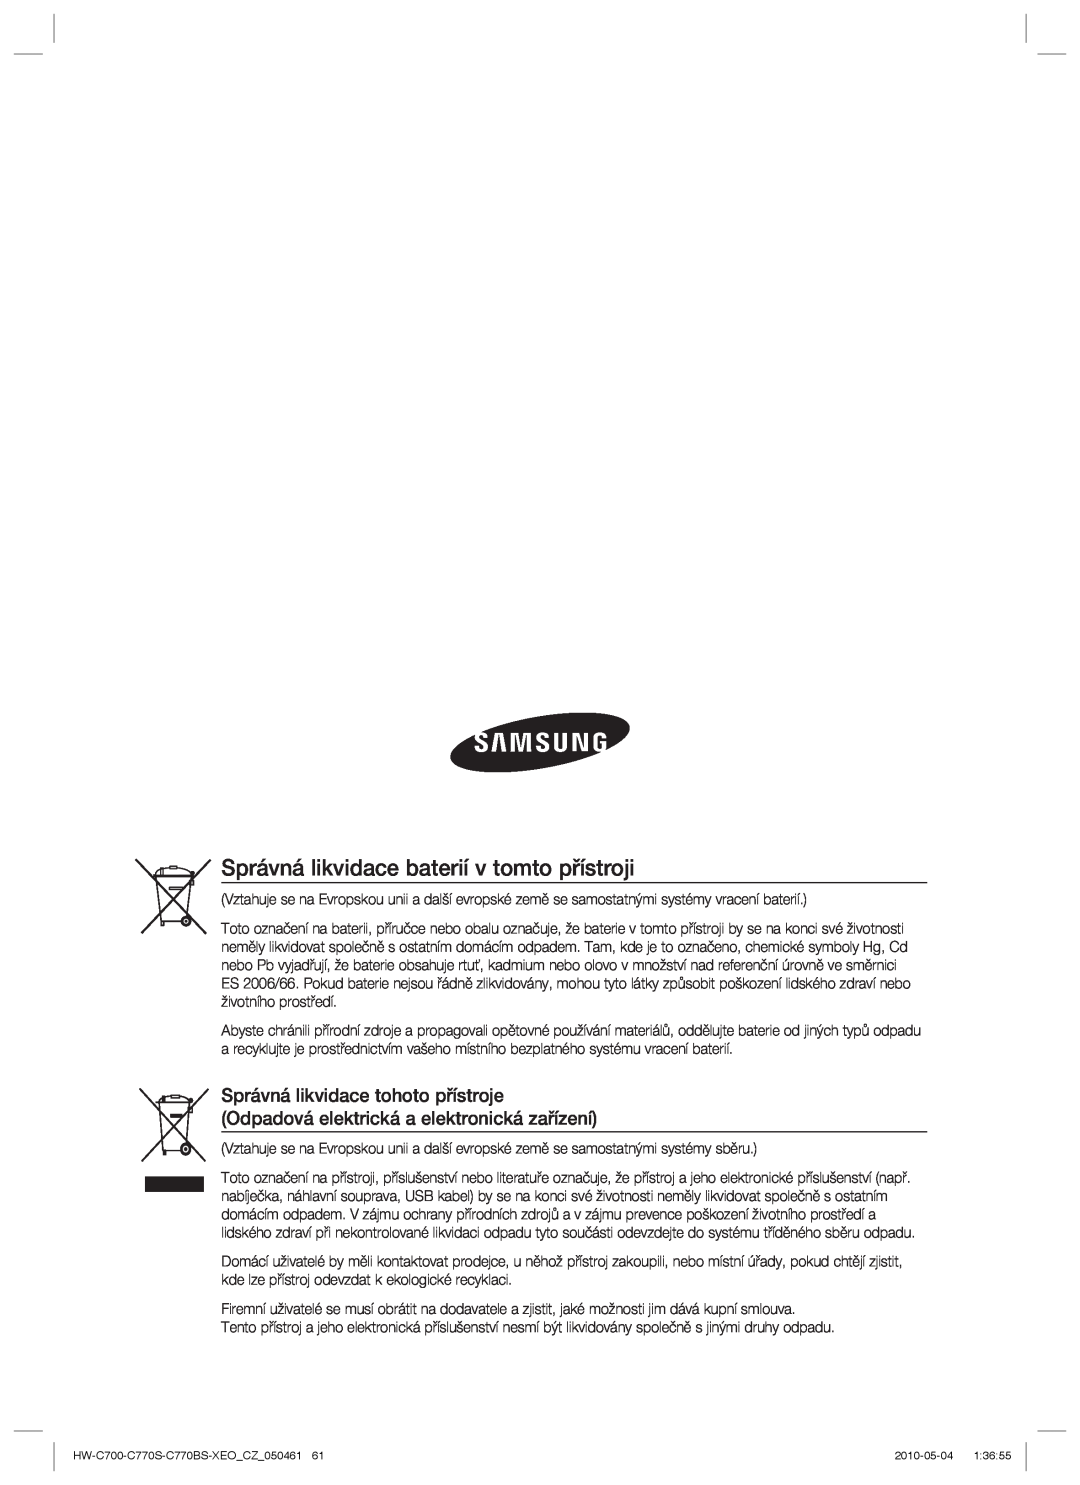 Samsung HW-C770S/EDC, HW-C700/EDC, HW-C770S/XEE manual Správná likvidace baterií v tomto přístroji 